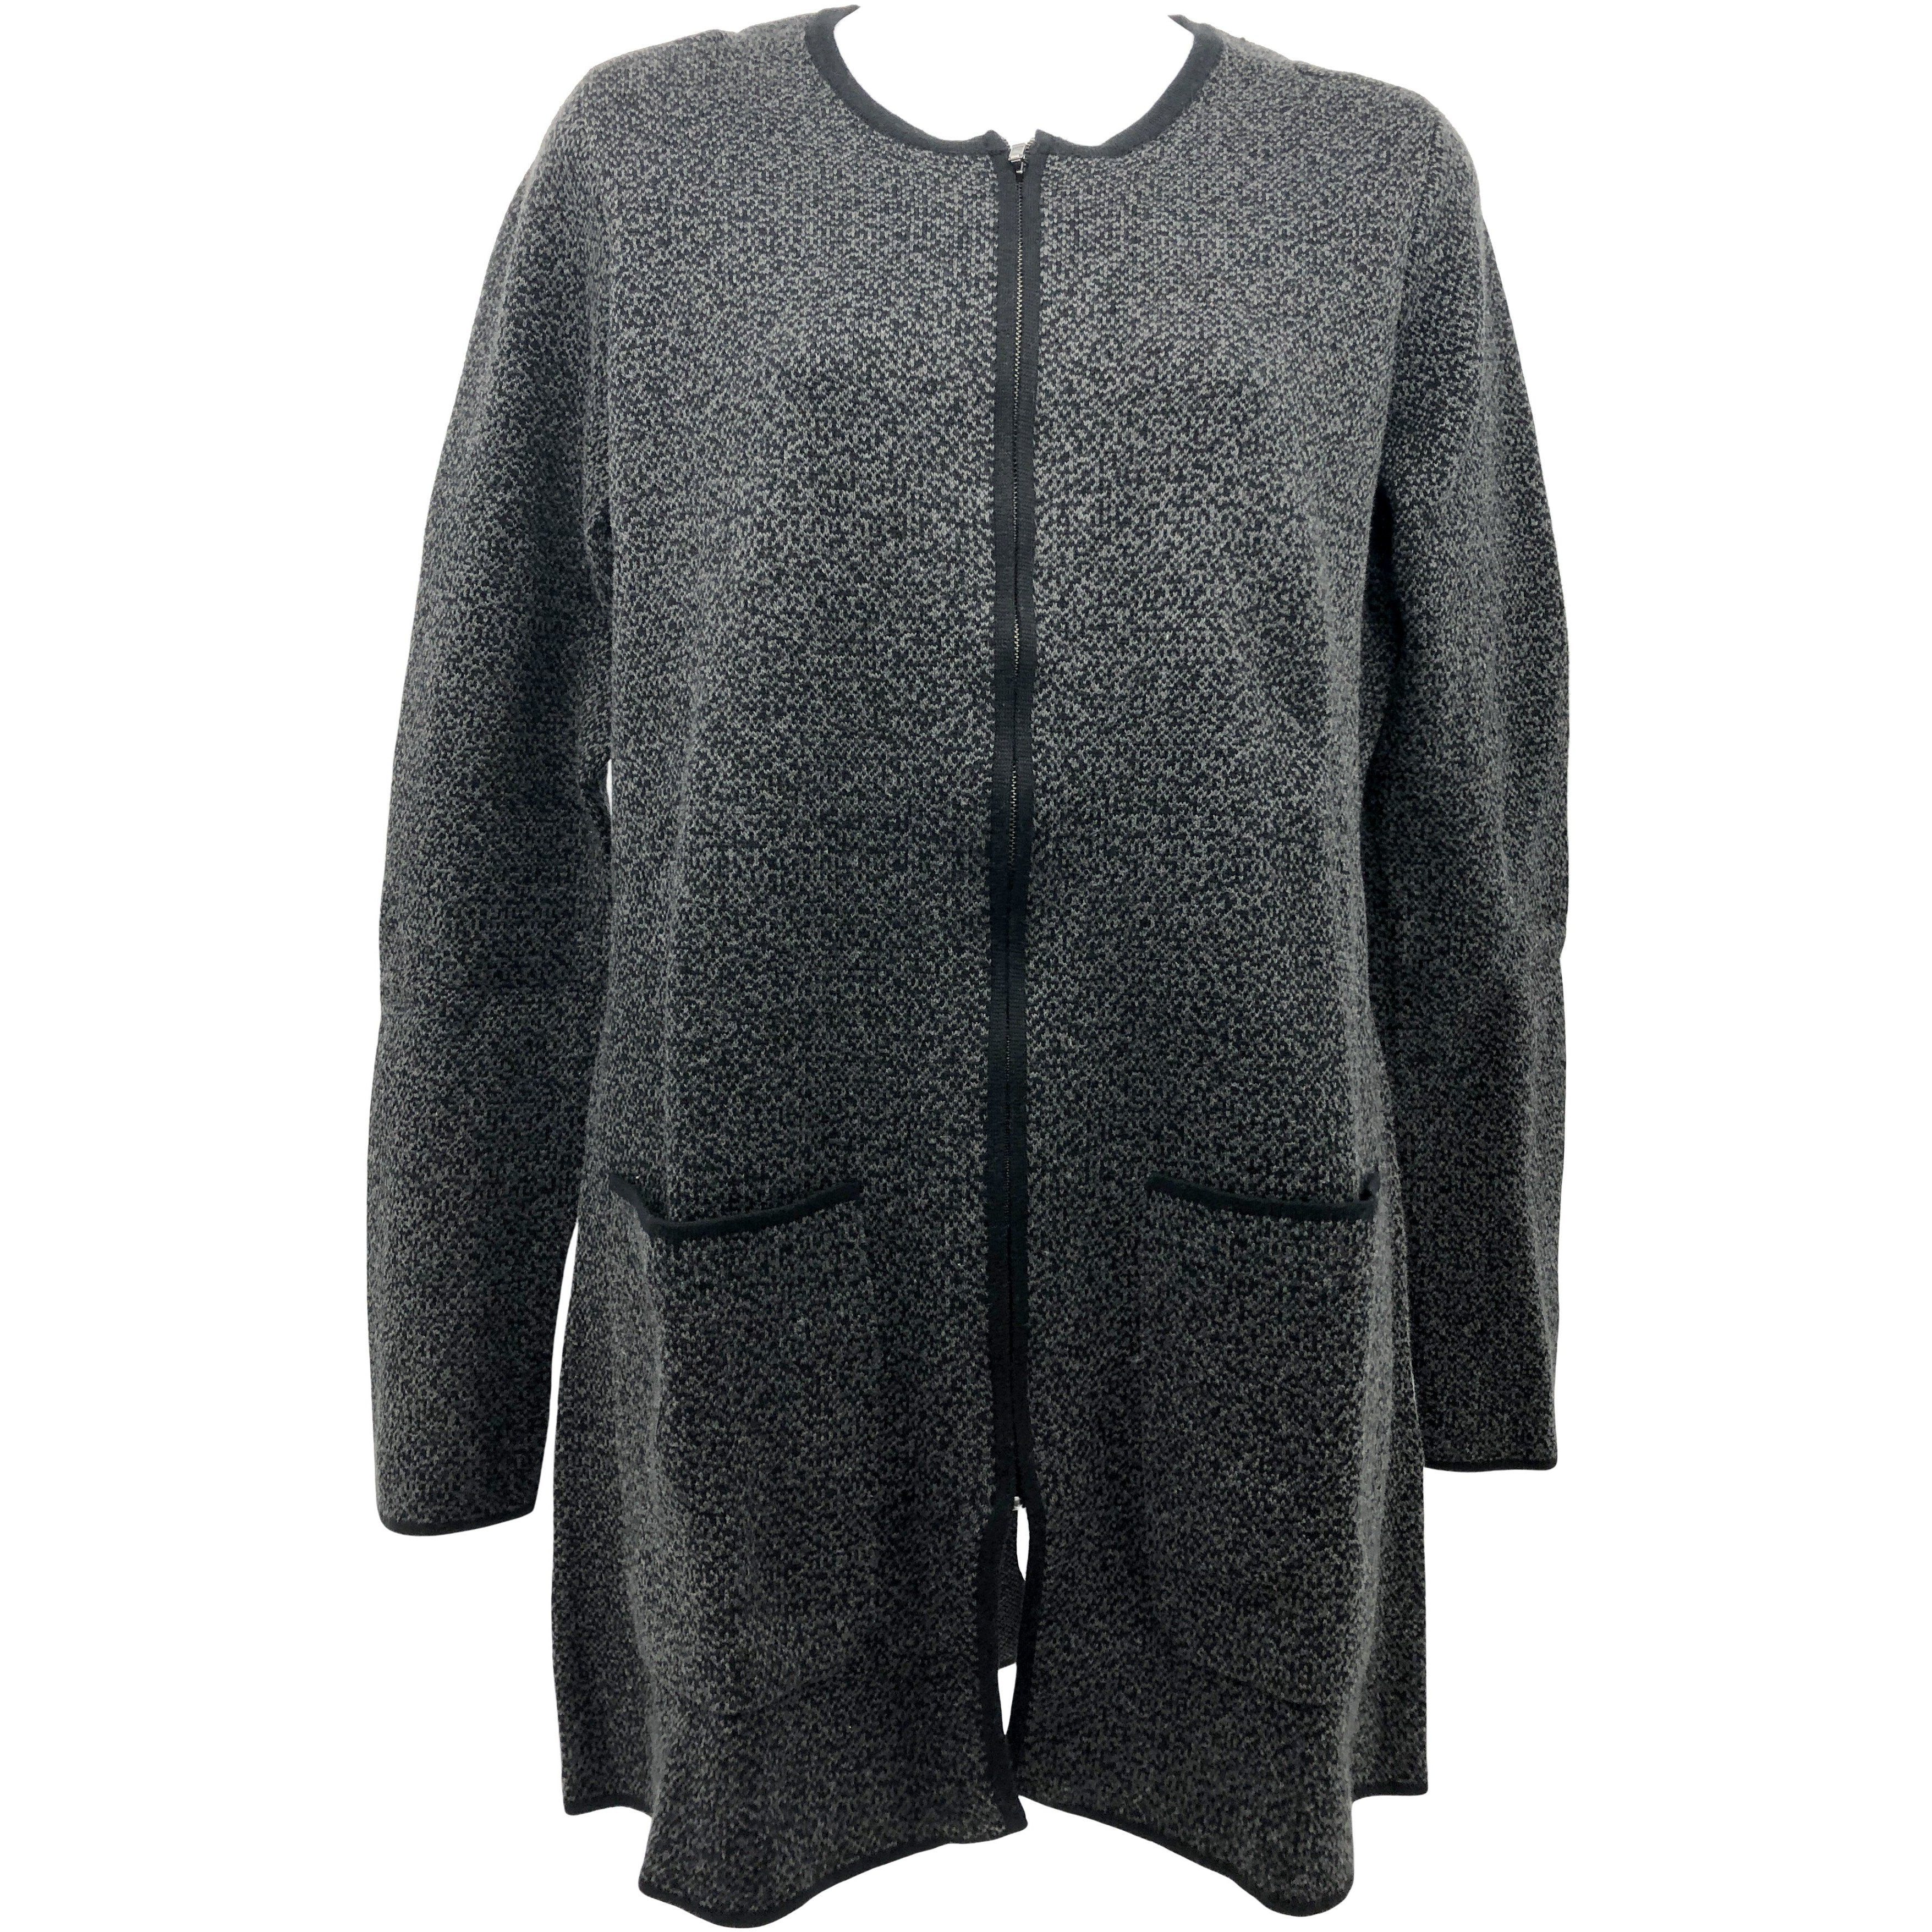 Nicole Miller Women's Zip Up Sweater / Black & Grey / Various Sizes